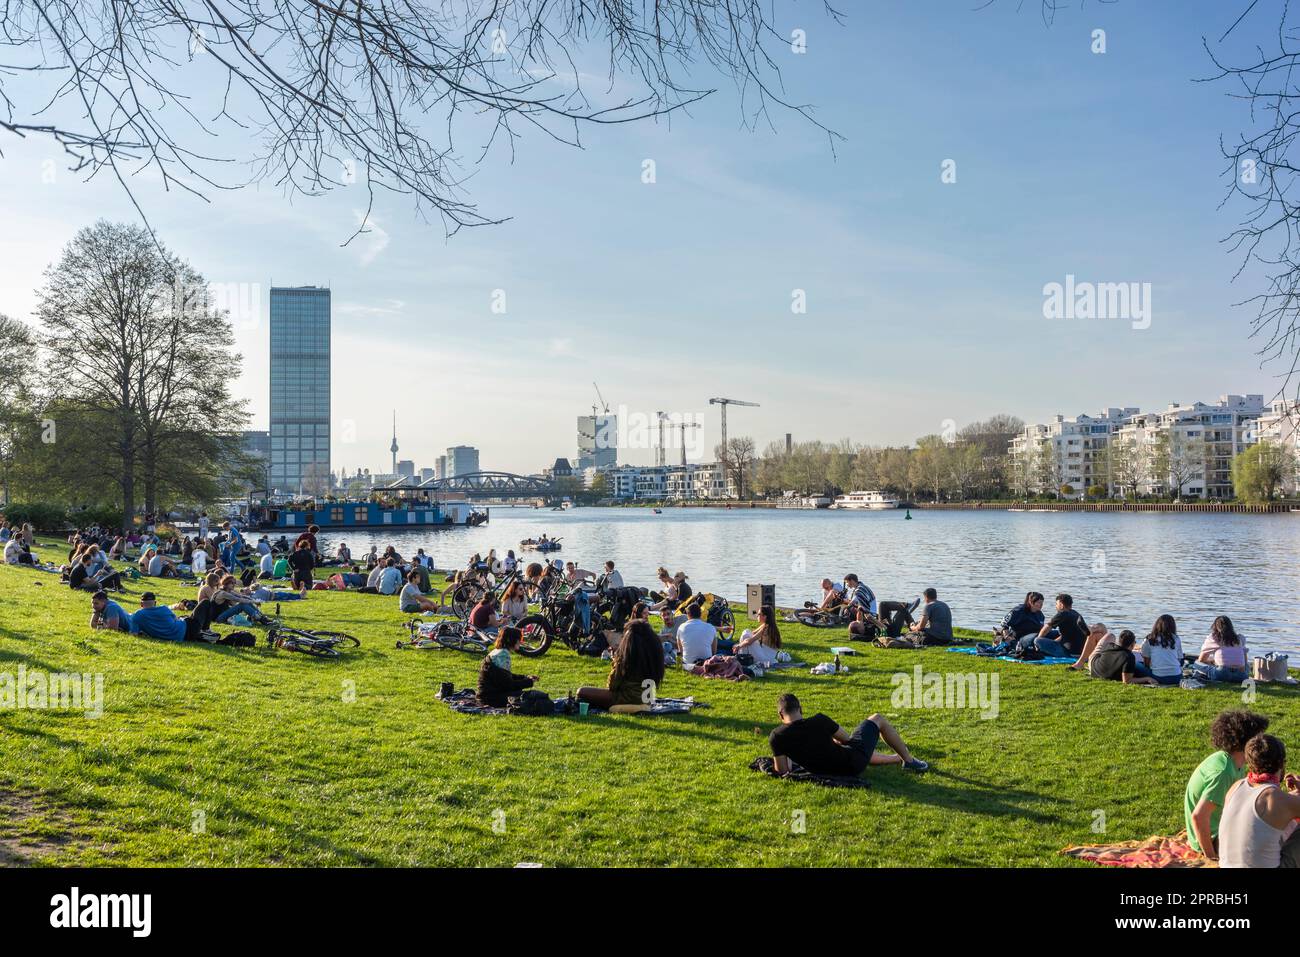 Persone che prendono il sole sulle rive del fiume Sprea durante la primavera al Treptower Park durante una calda giornata primaverile a Berlino Treptow, Germania, Europa Foto Stock